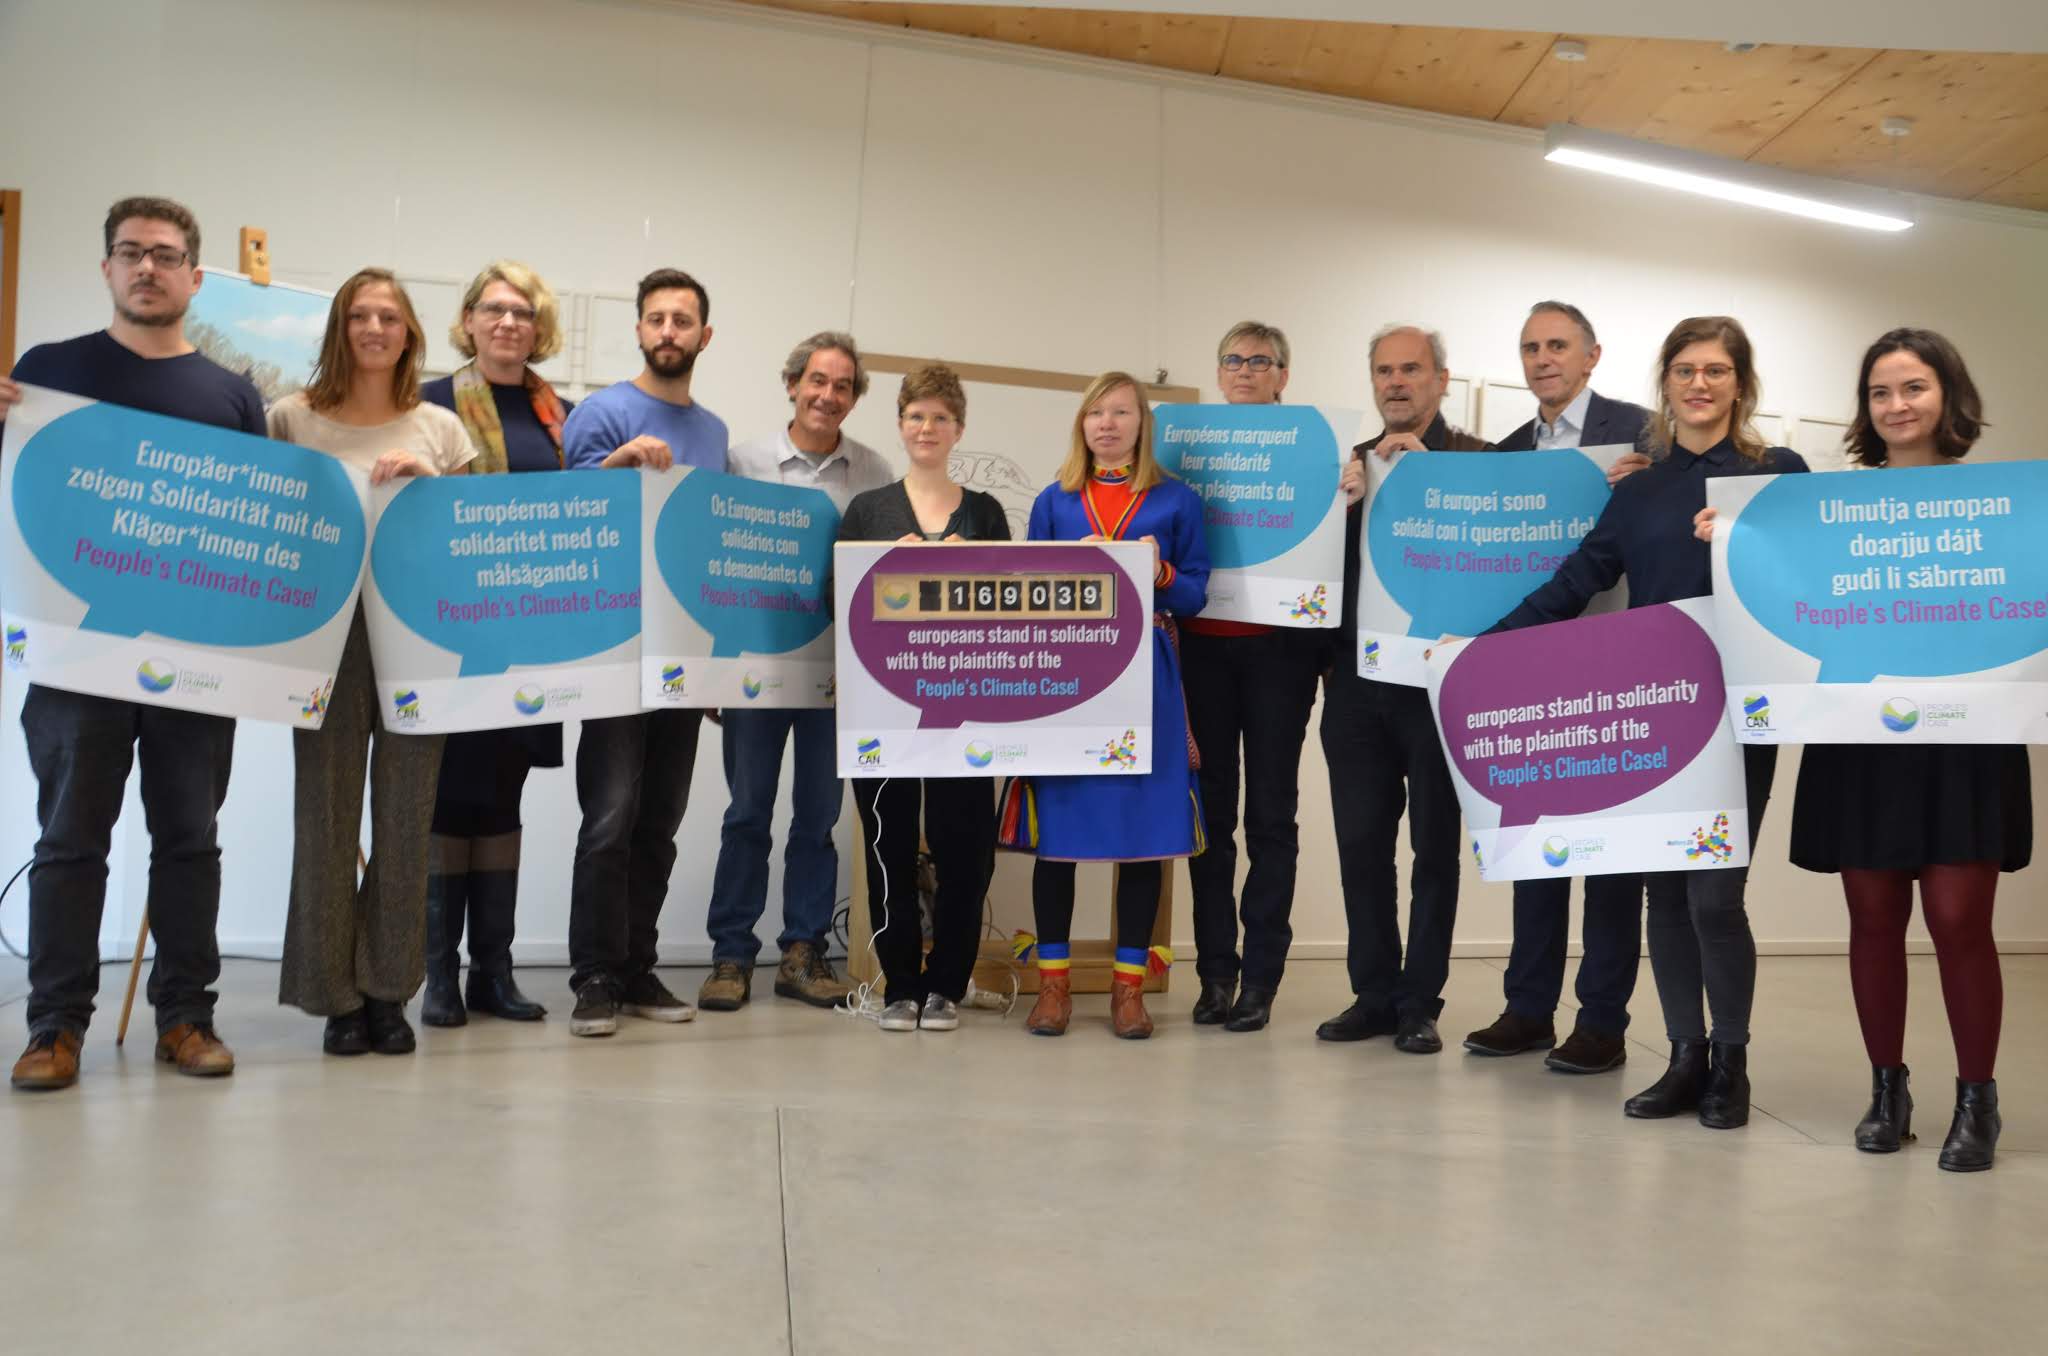 Plaignants du People's Climate Case à Luxembourg en novembre 2019